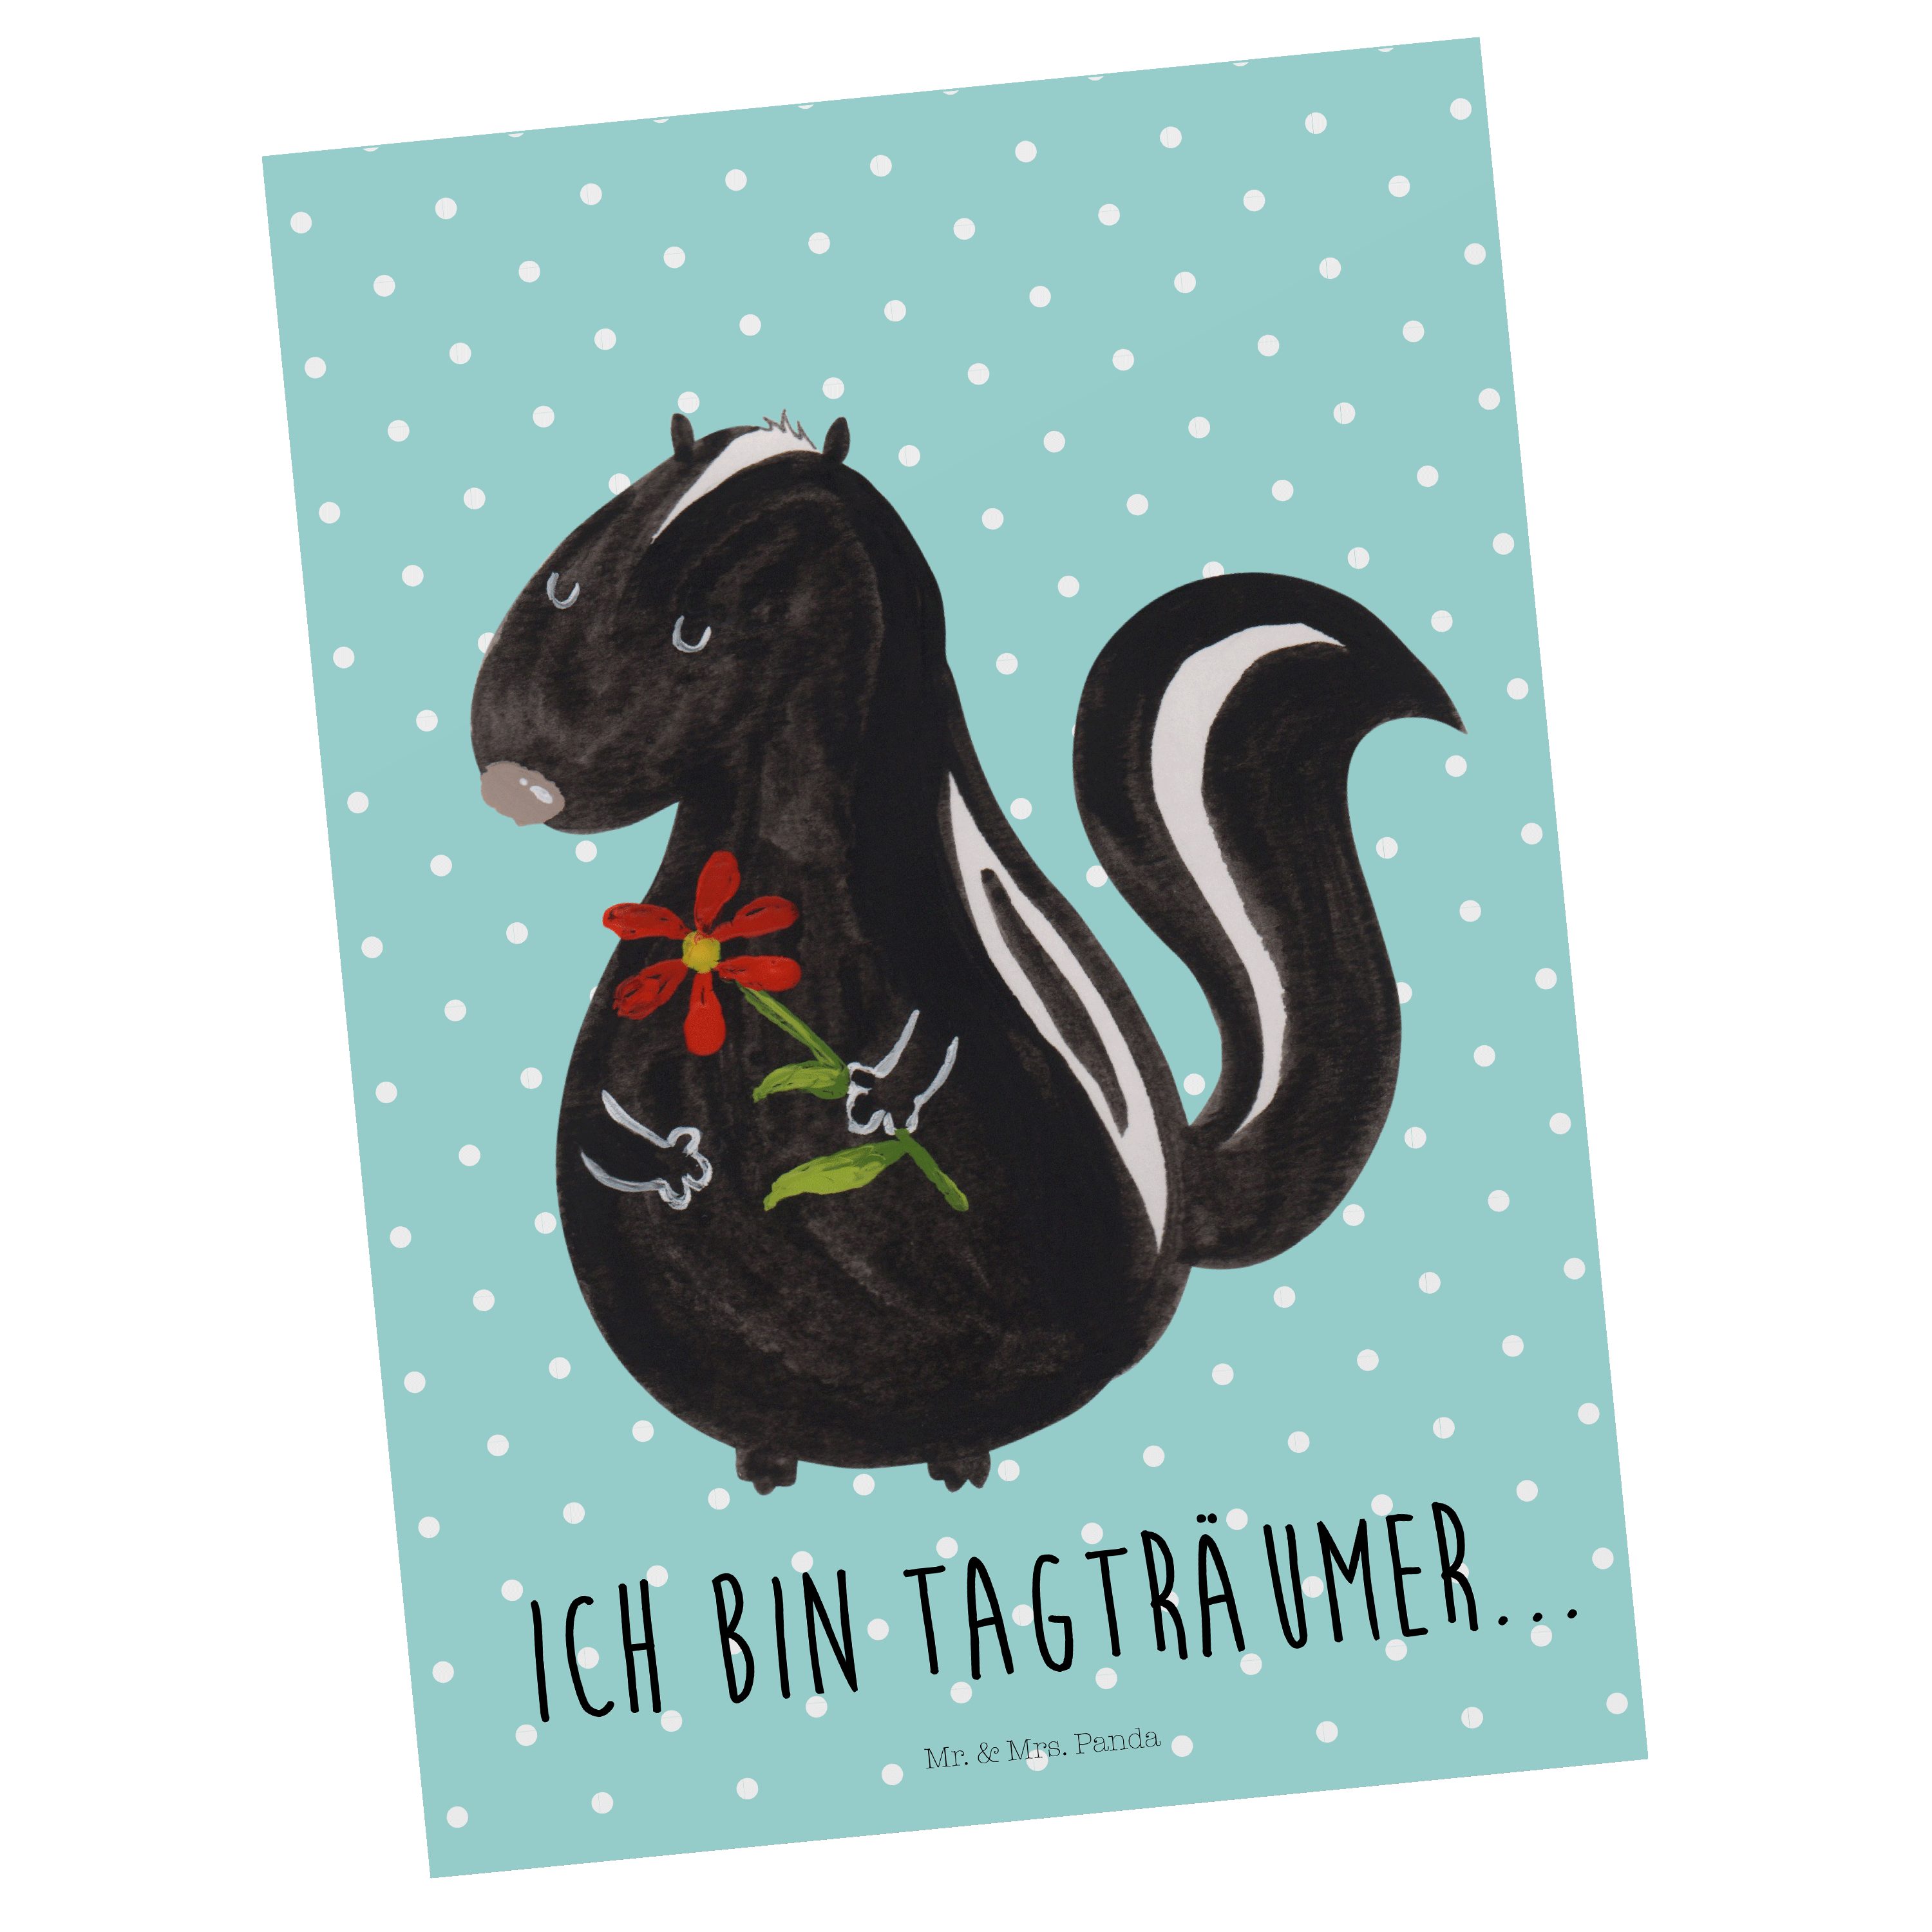 Mr. & Mrs. Panda Postkarte Blume - Geschenk, Türkis Stinker, Pastell Einladung, - Stinktier Gesc